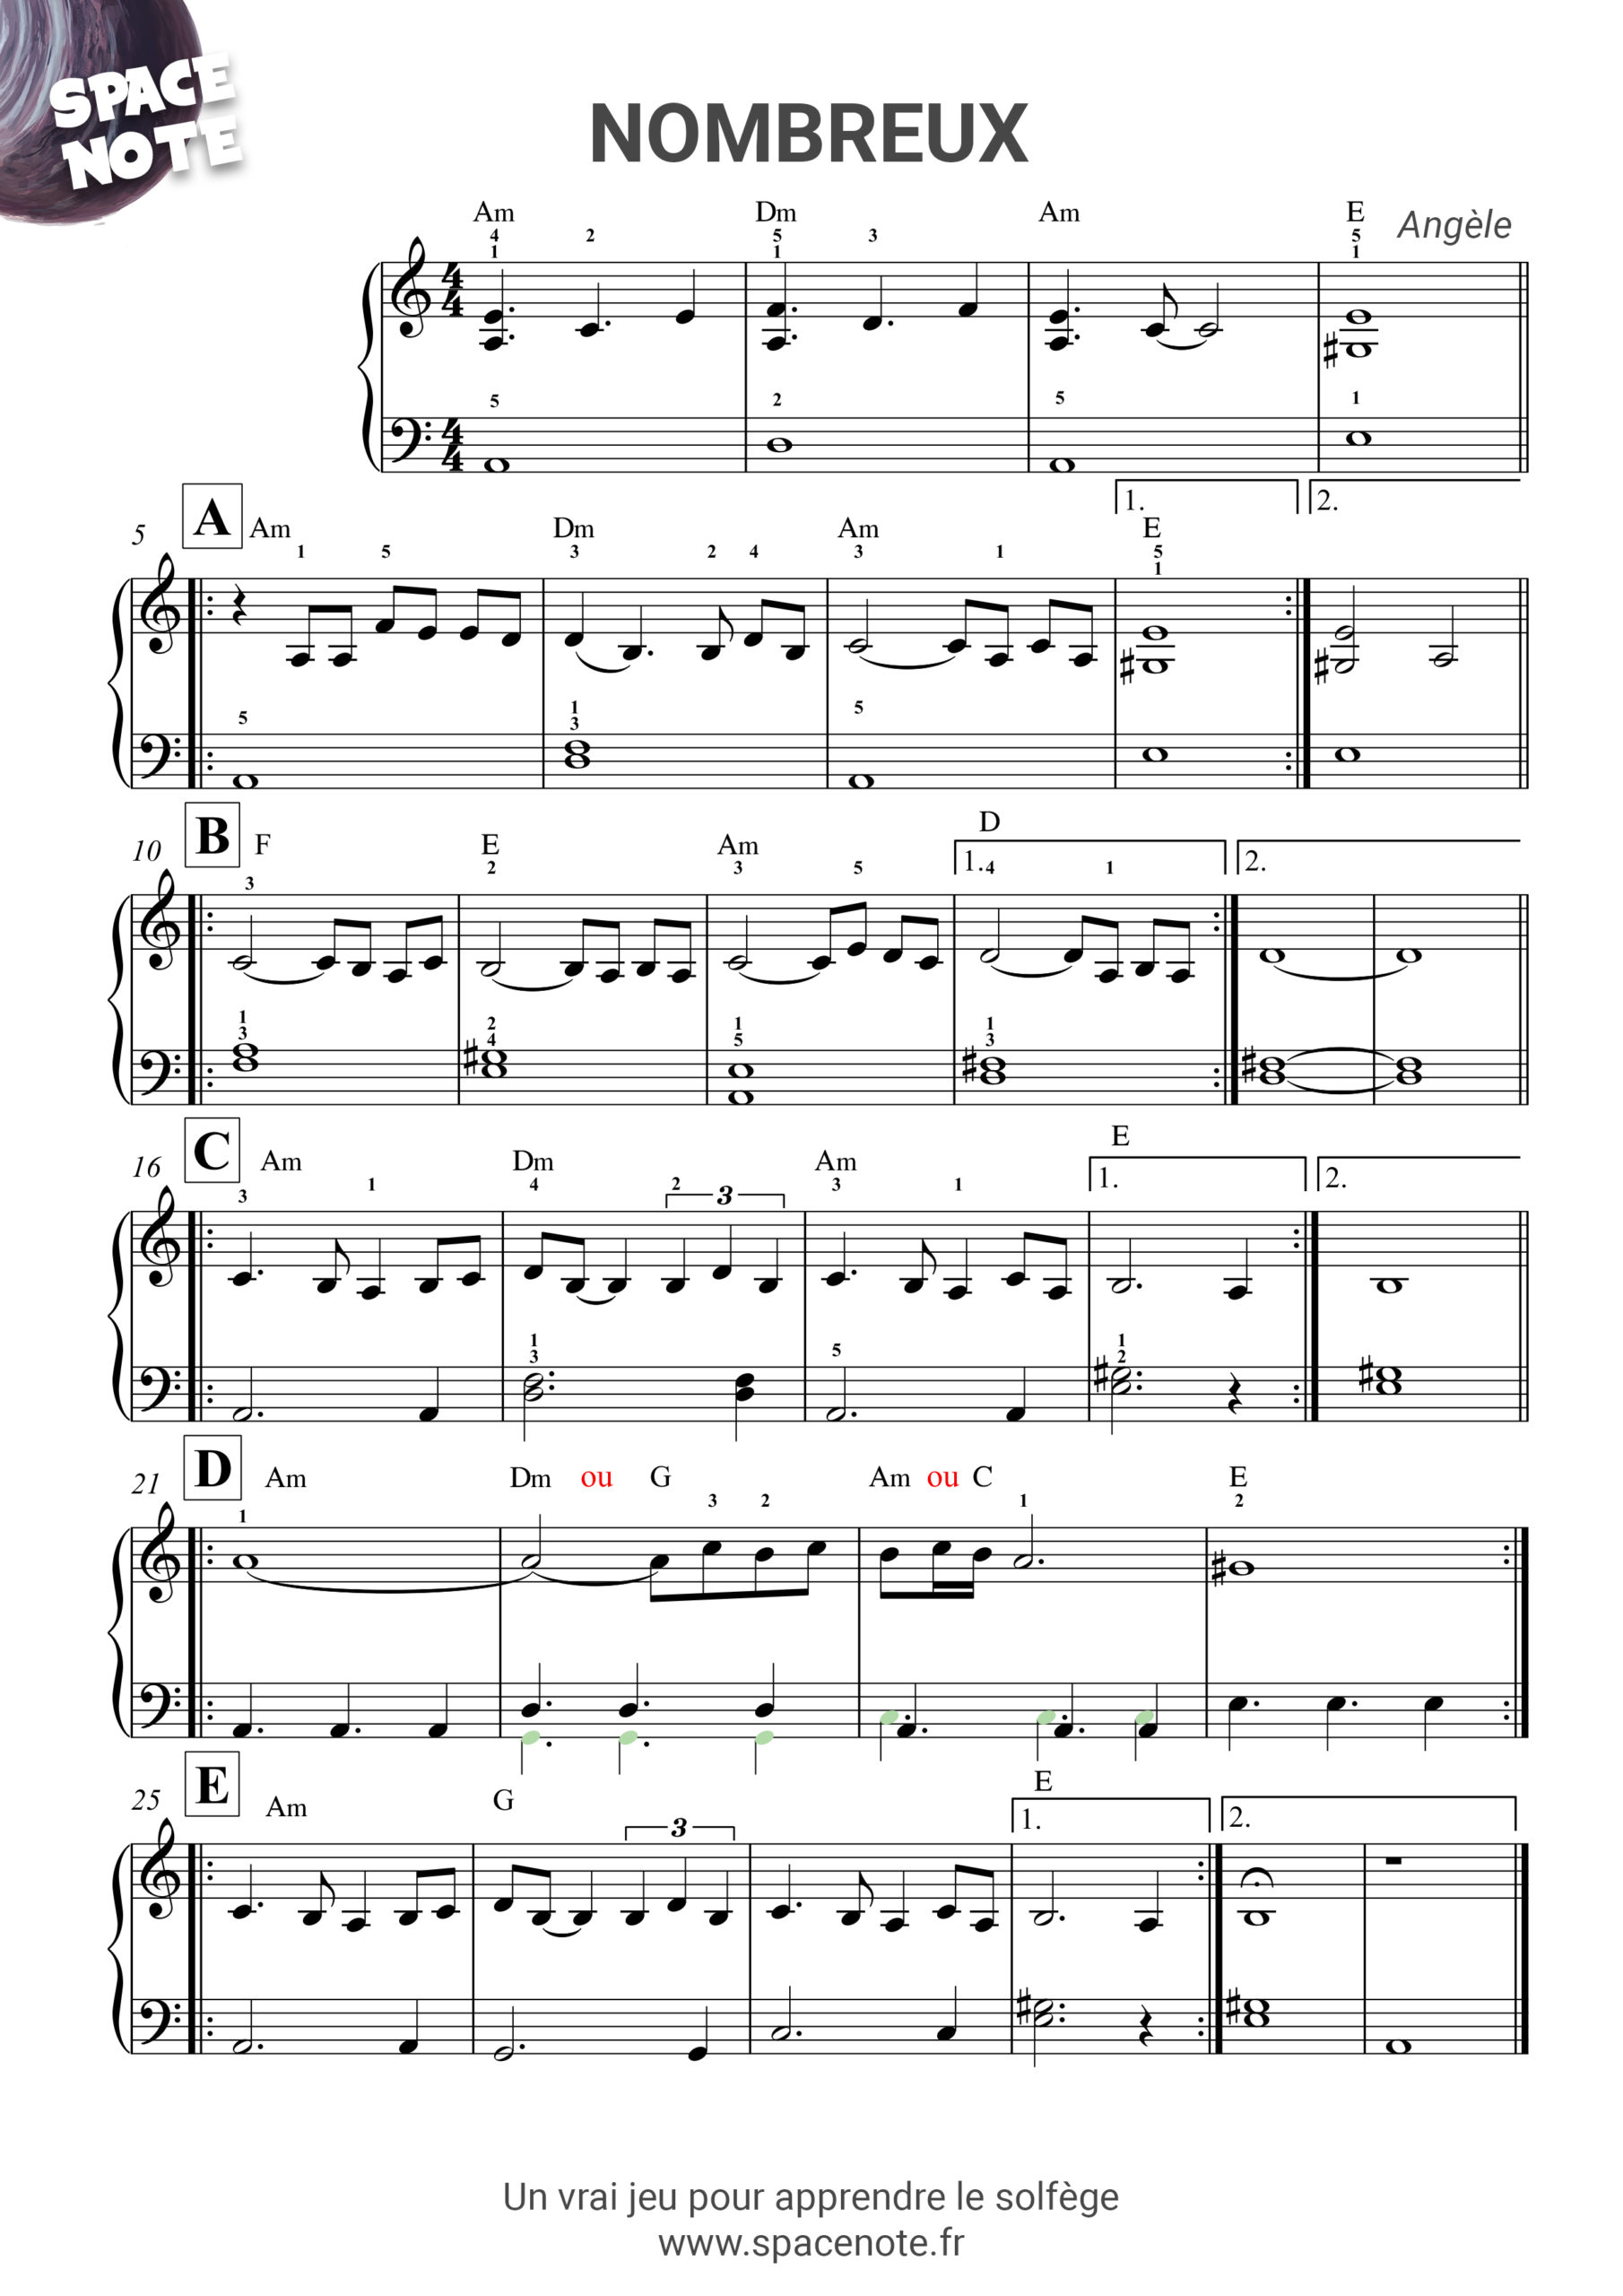 Partitions de piano pour débutant - PianoFacile